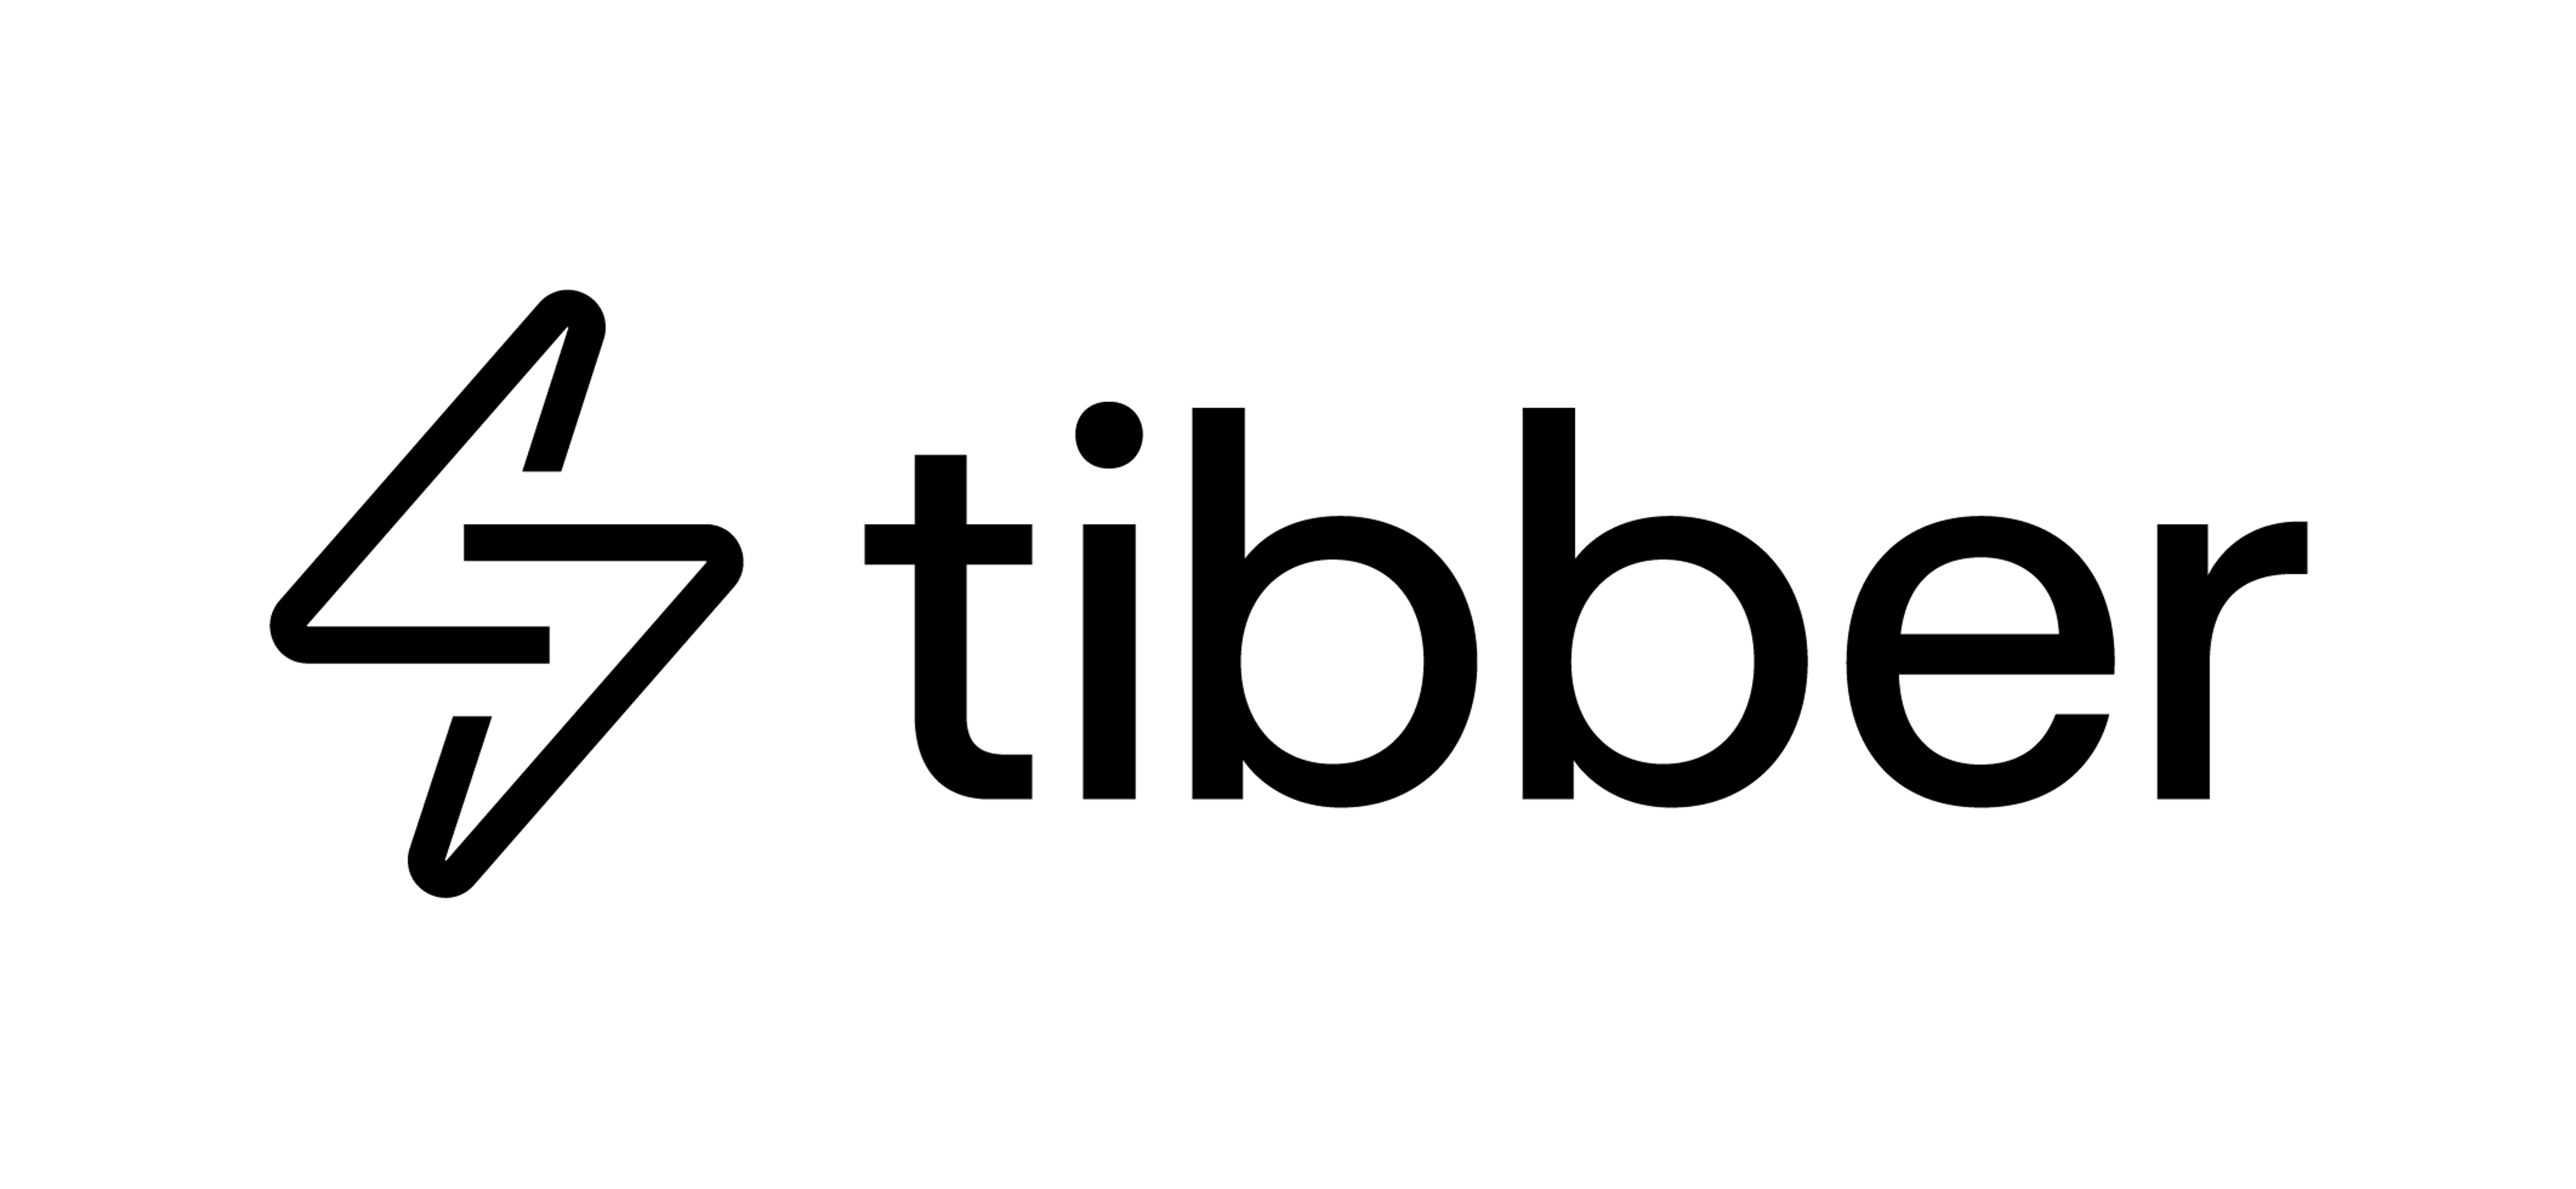 tibber logo